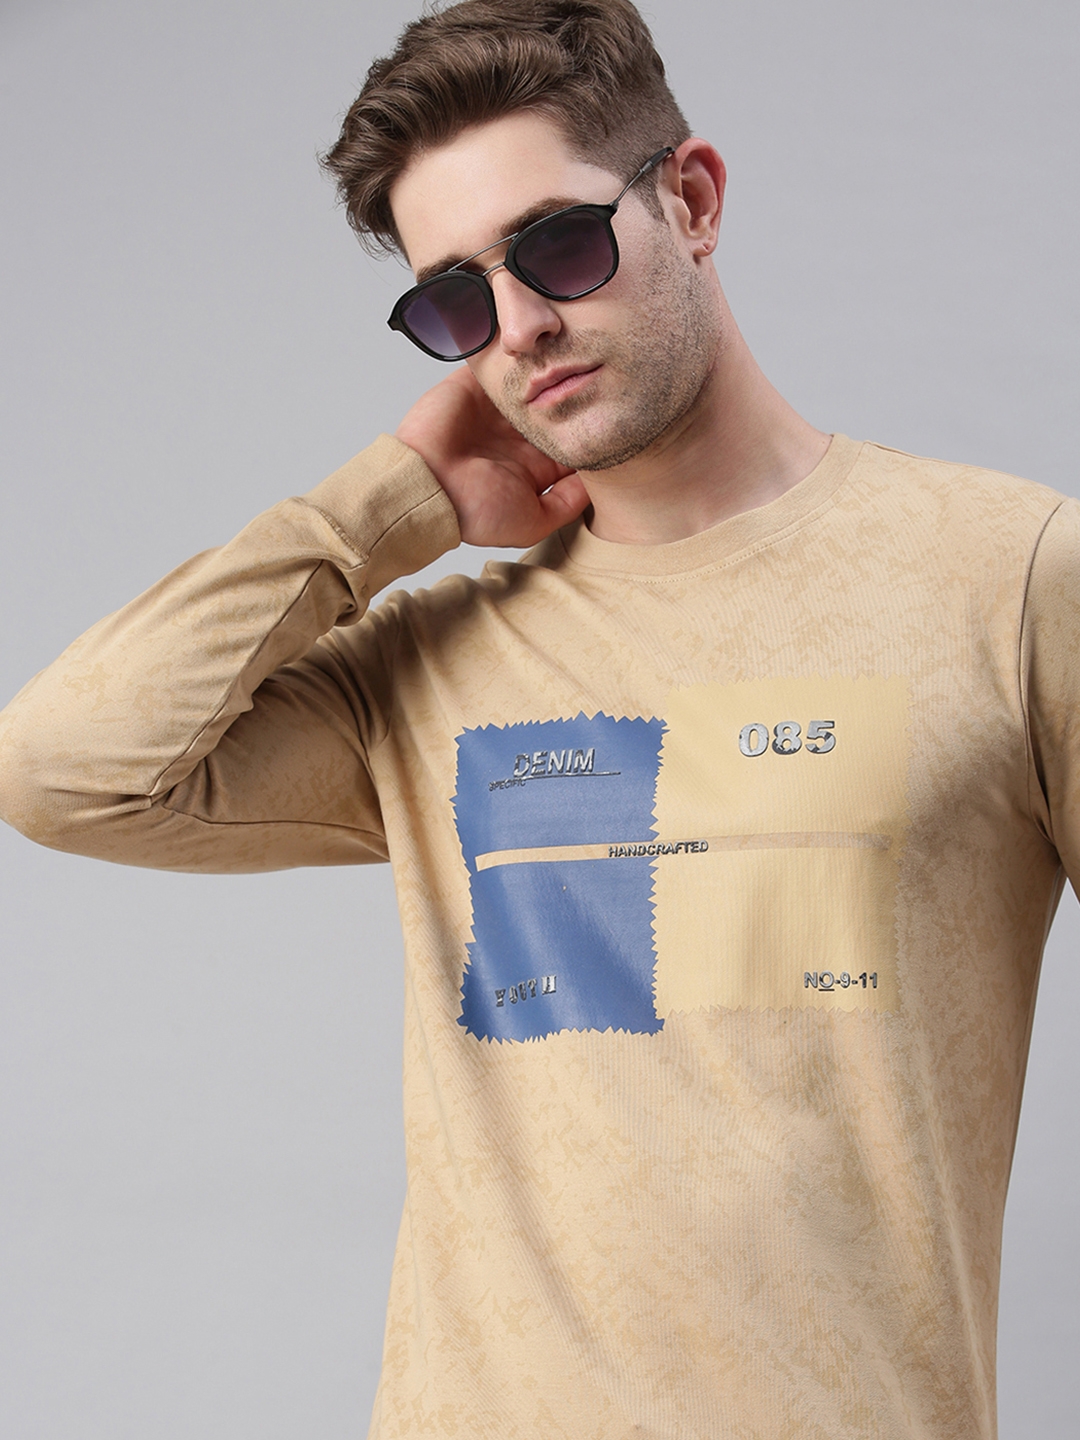 Men's Beige Cotton Blend Printed Sweatshirts